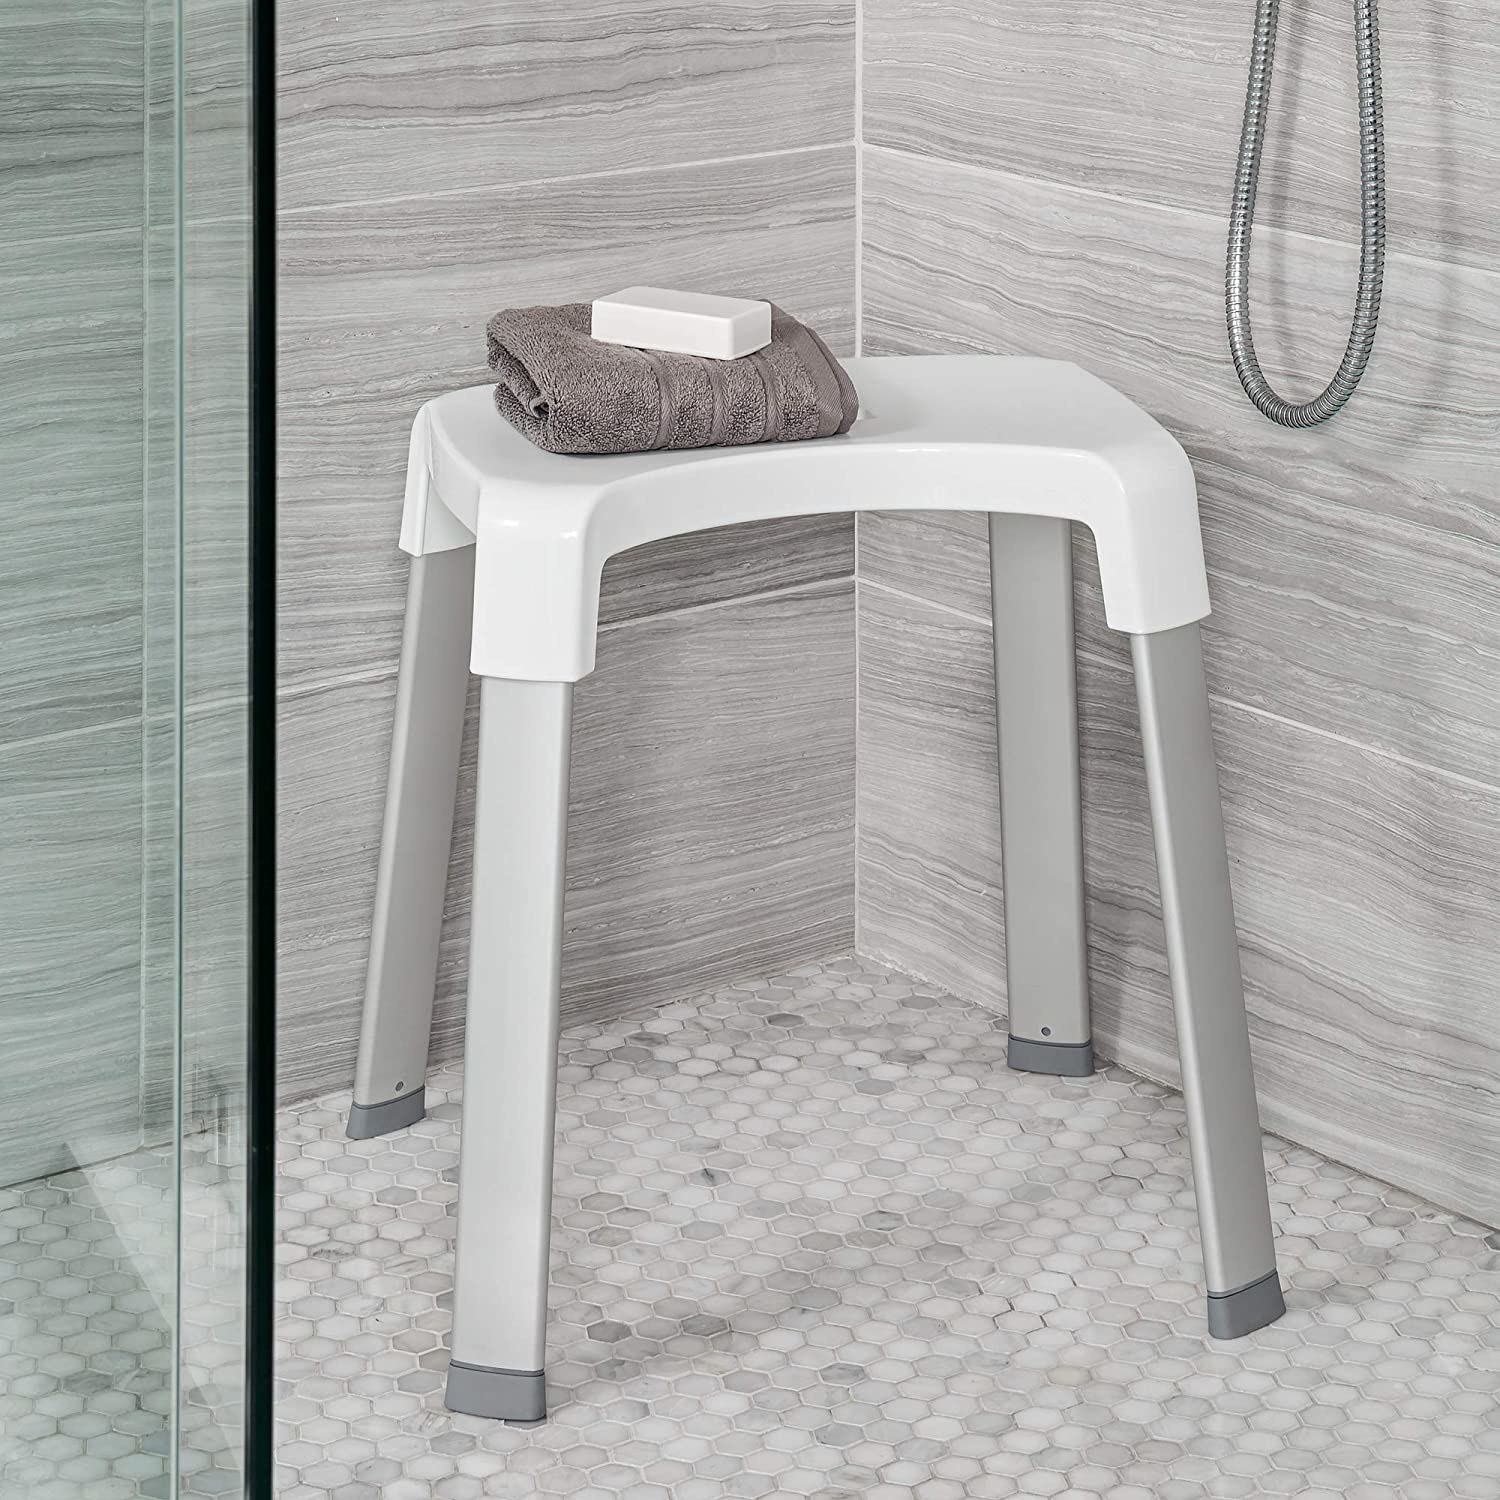 a shower stool inside a shower stall